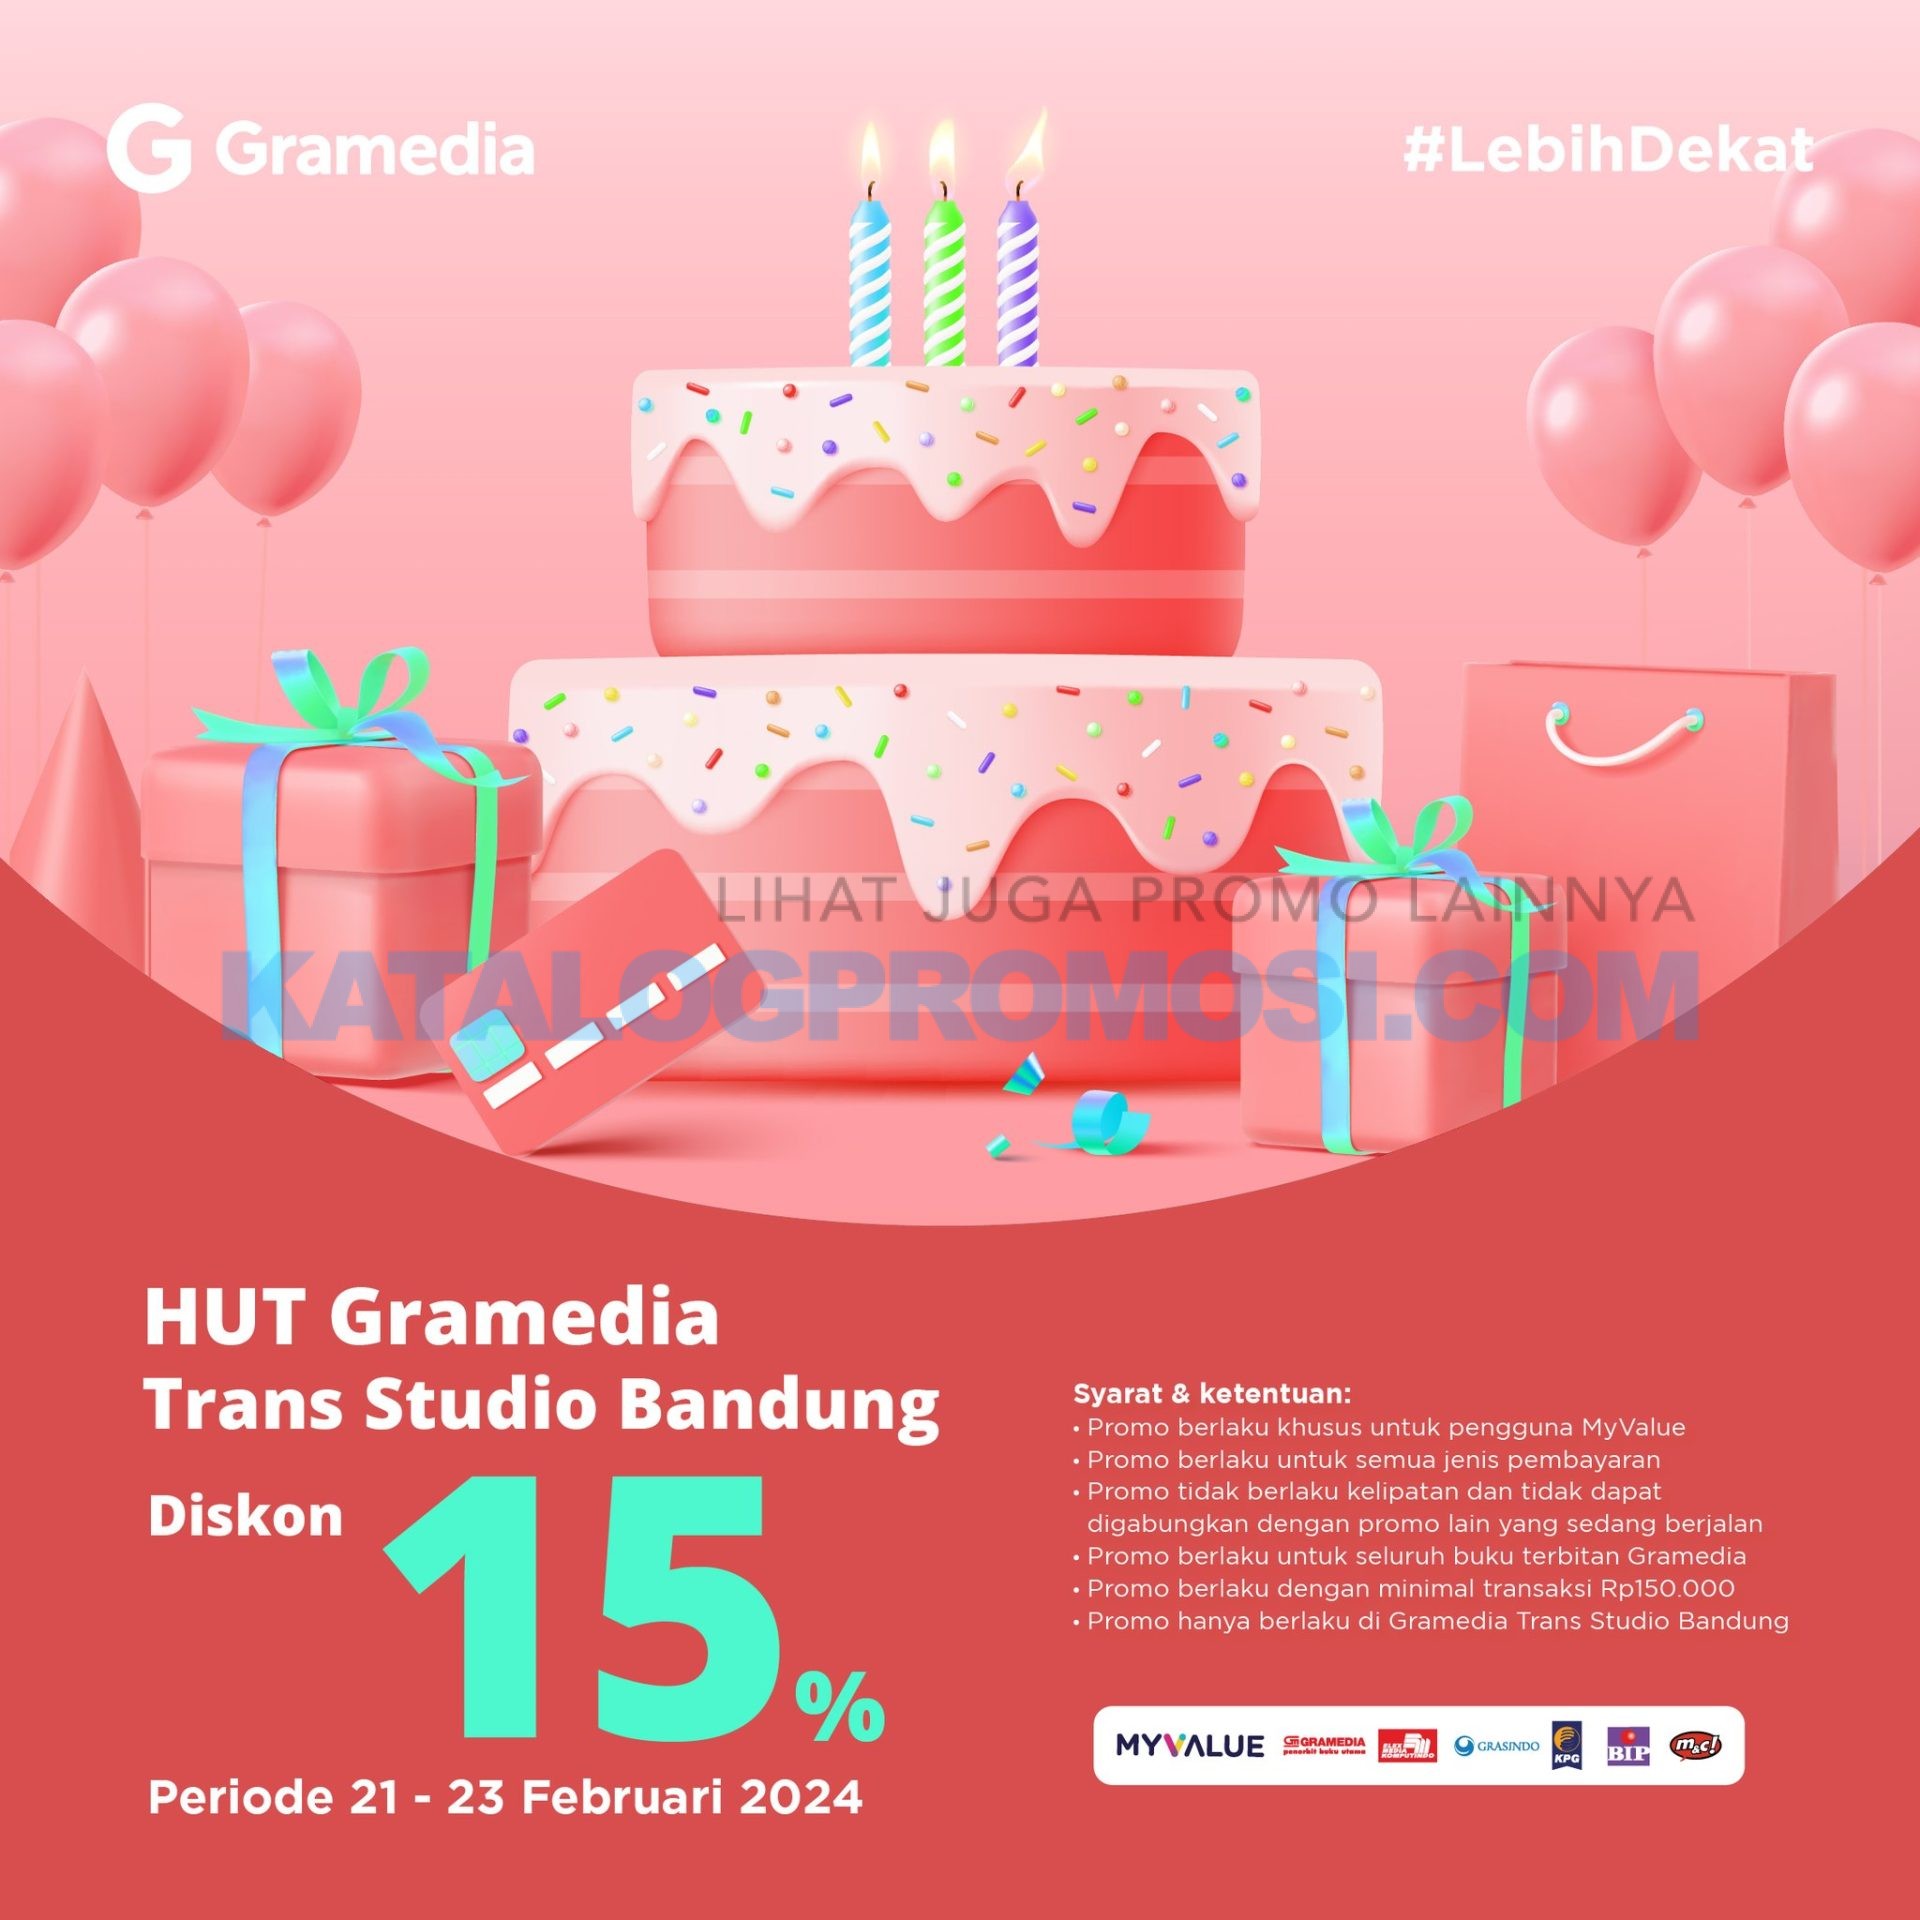 Promo HUT Gramedia Trans Studio Bandung - DISCOUNT 15% OFF HANYA di tanggal 21-23 Februari 2024